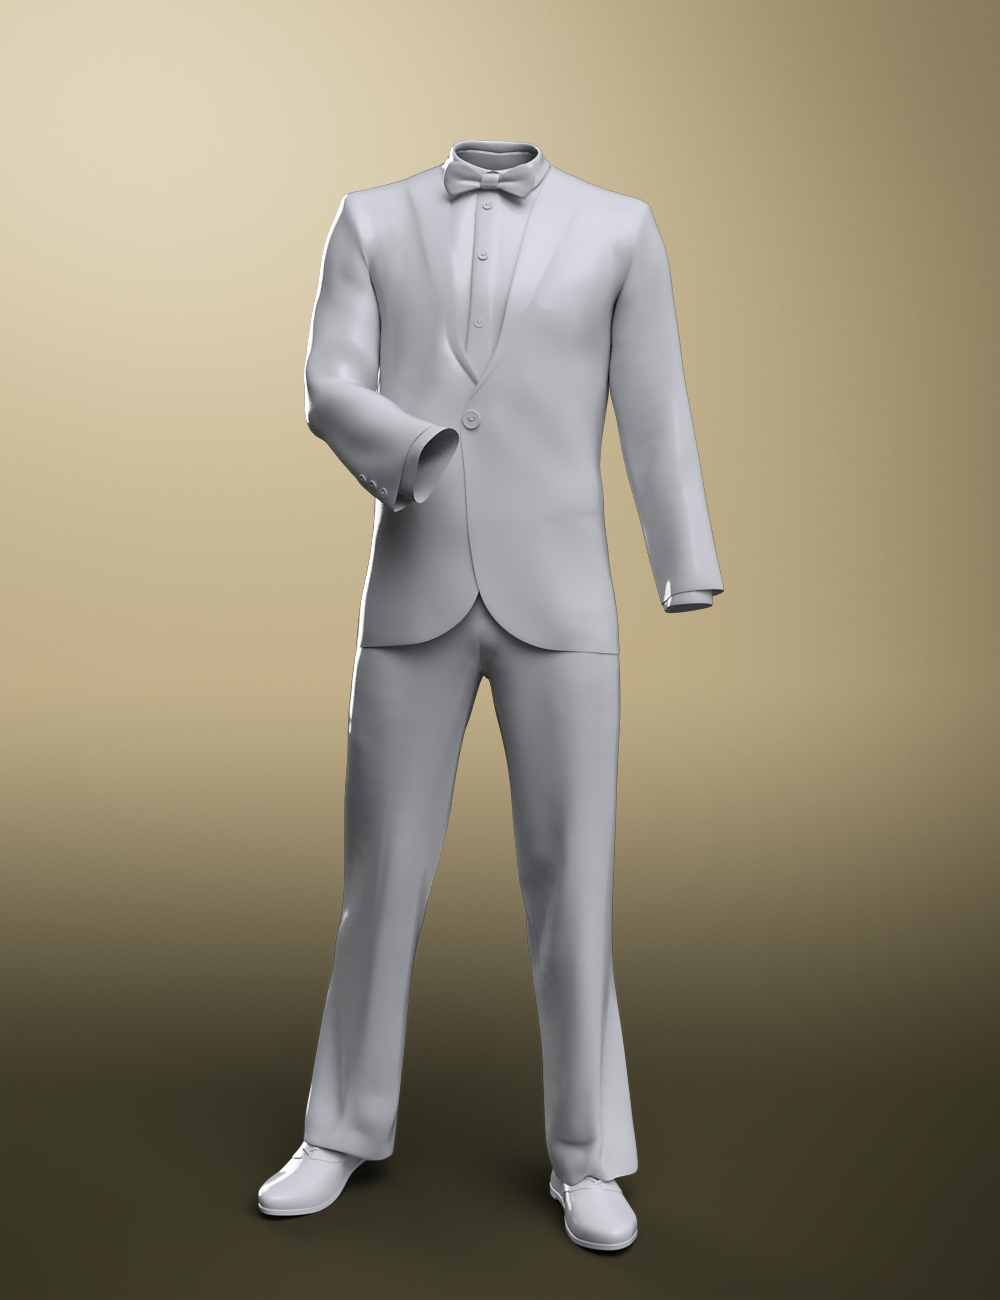 dForce Monte Carlo Suit for Genesis 8 Male(s) by: Moonscape GraphicsNikisatezSade, 3D Models by Daz 3D